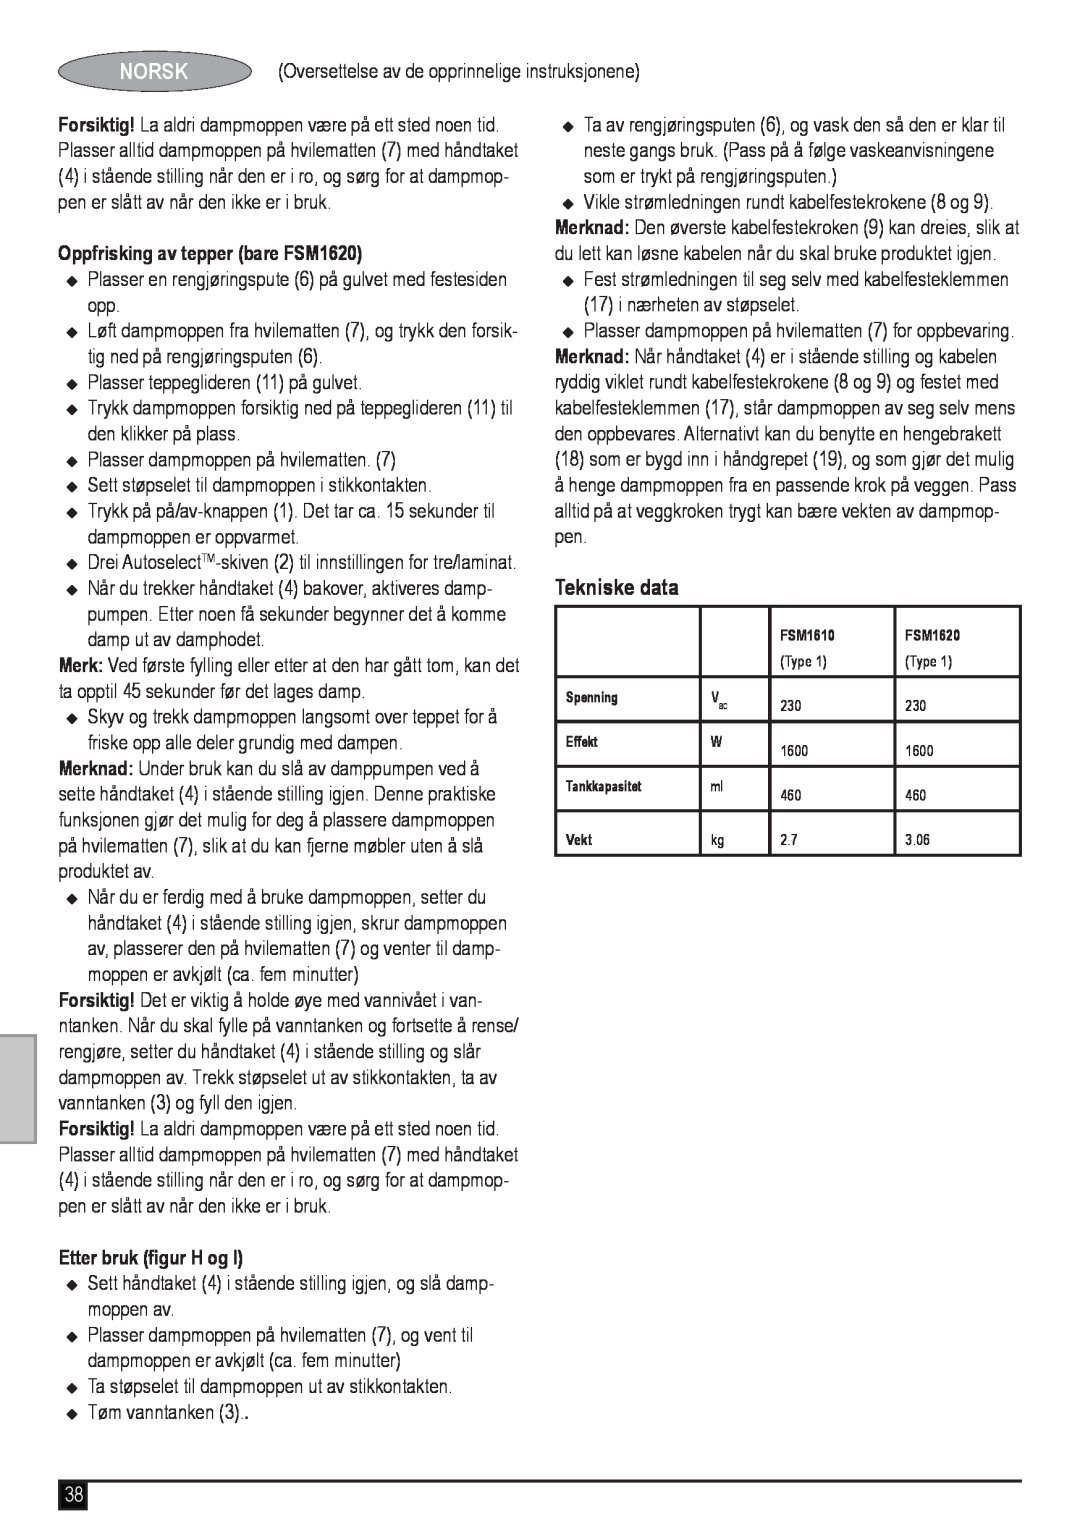 Black & Decker manual Tekniske data, Oppfrisking av tepper bare FSM1620, Etter bruk figur H og, Norsk 